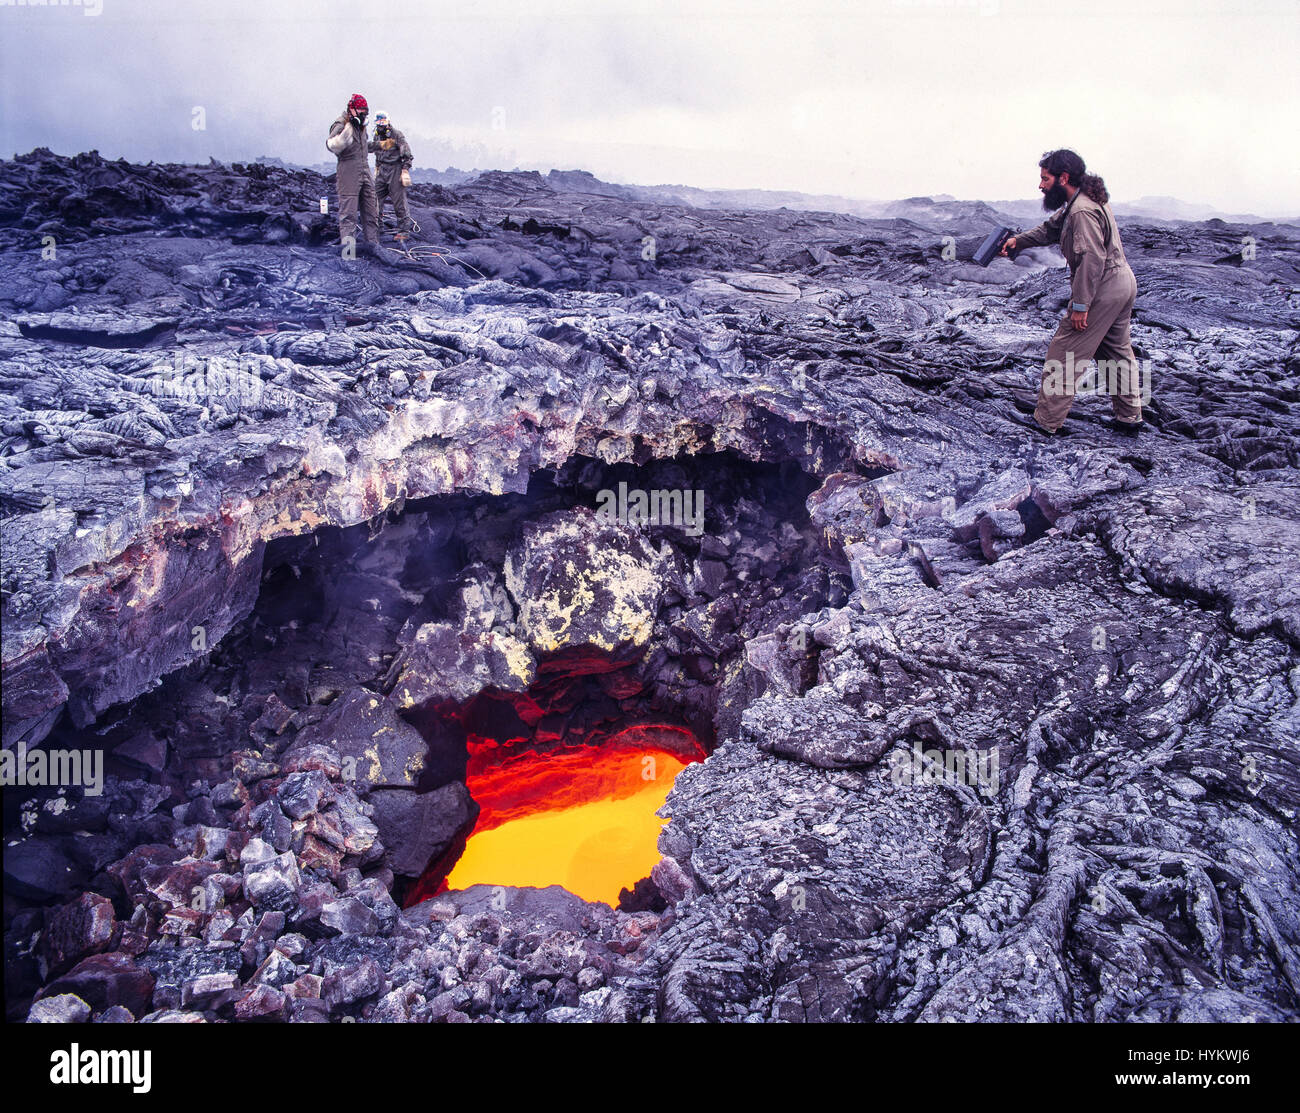 Esclusiva di Big Island delle Hawaii,: gli scienziati si prepara ad  affrontare il campione di lava dal fiume di lava entro il tubo di lava.  Scienziato sulla destra la misurazione della velocità